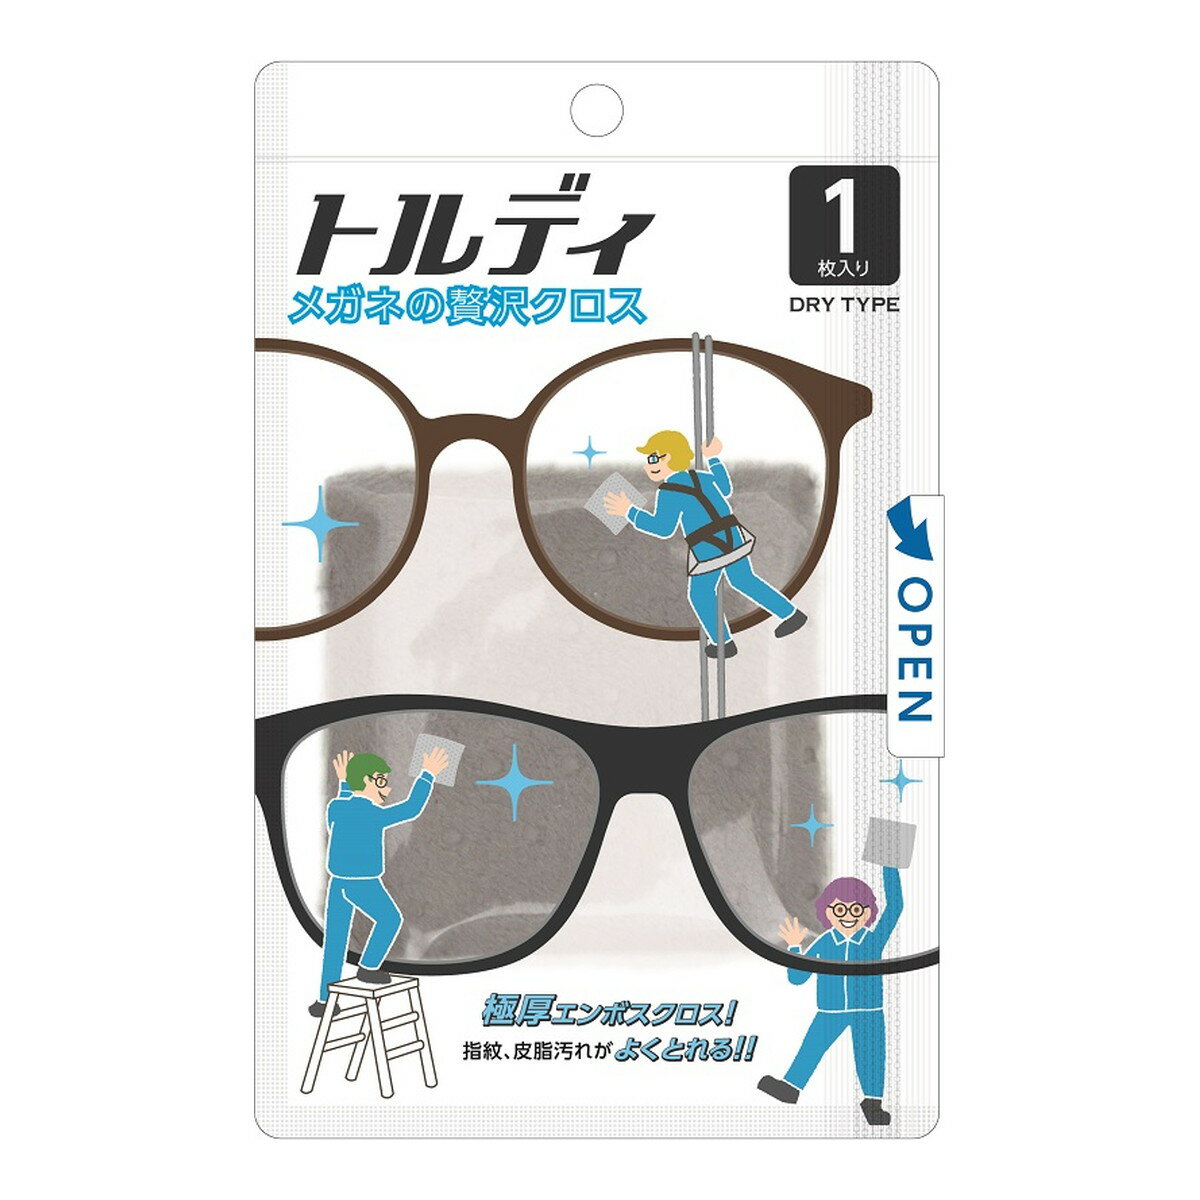 商品名：ソフト99コーポレーション メガネの贅沢クロス トルディ 眼鏡拭き 1枚入内容量：1枚JANコード：4975759202110発売元、製造元、輸入元又は販売元：ソフト99コーポレーション原産国：日本商品番号：101-m001-4975759202110商品説明洗ってくり返し使えるドライクロスタイプのメガネレンズクリーナーです。厚手で毛足が長く、エンボス加工の凹凸で繊細かつぜい沢な使用感をもたらします。スマートフォンや携帯ゲームの液晶画面にも使用できます。広告文責：アットライフ株式会社TEL 050-3196-1510 ※商品パッケージは変更の場合あり。メーカー欠品または完売の際、キャンセルをお願いすることがあります。ご了承ください。